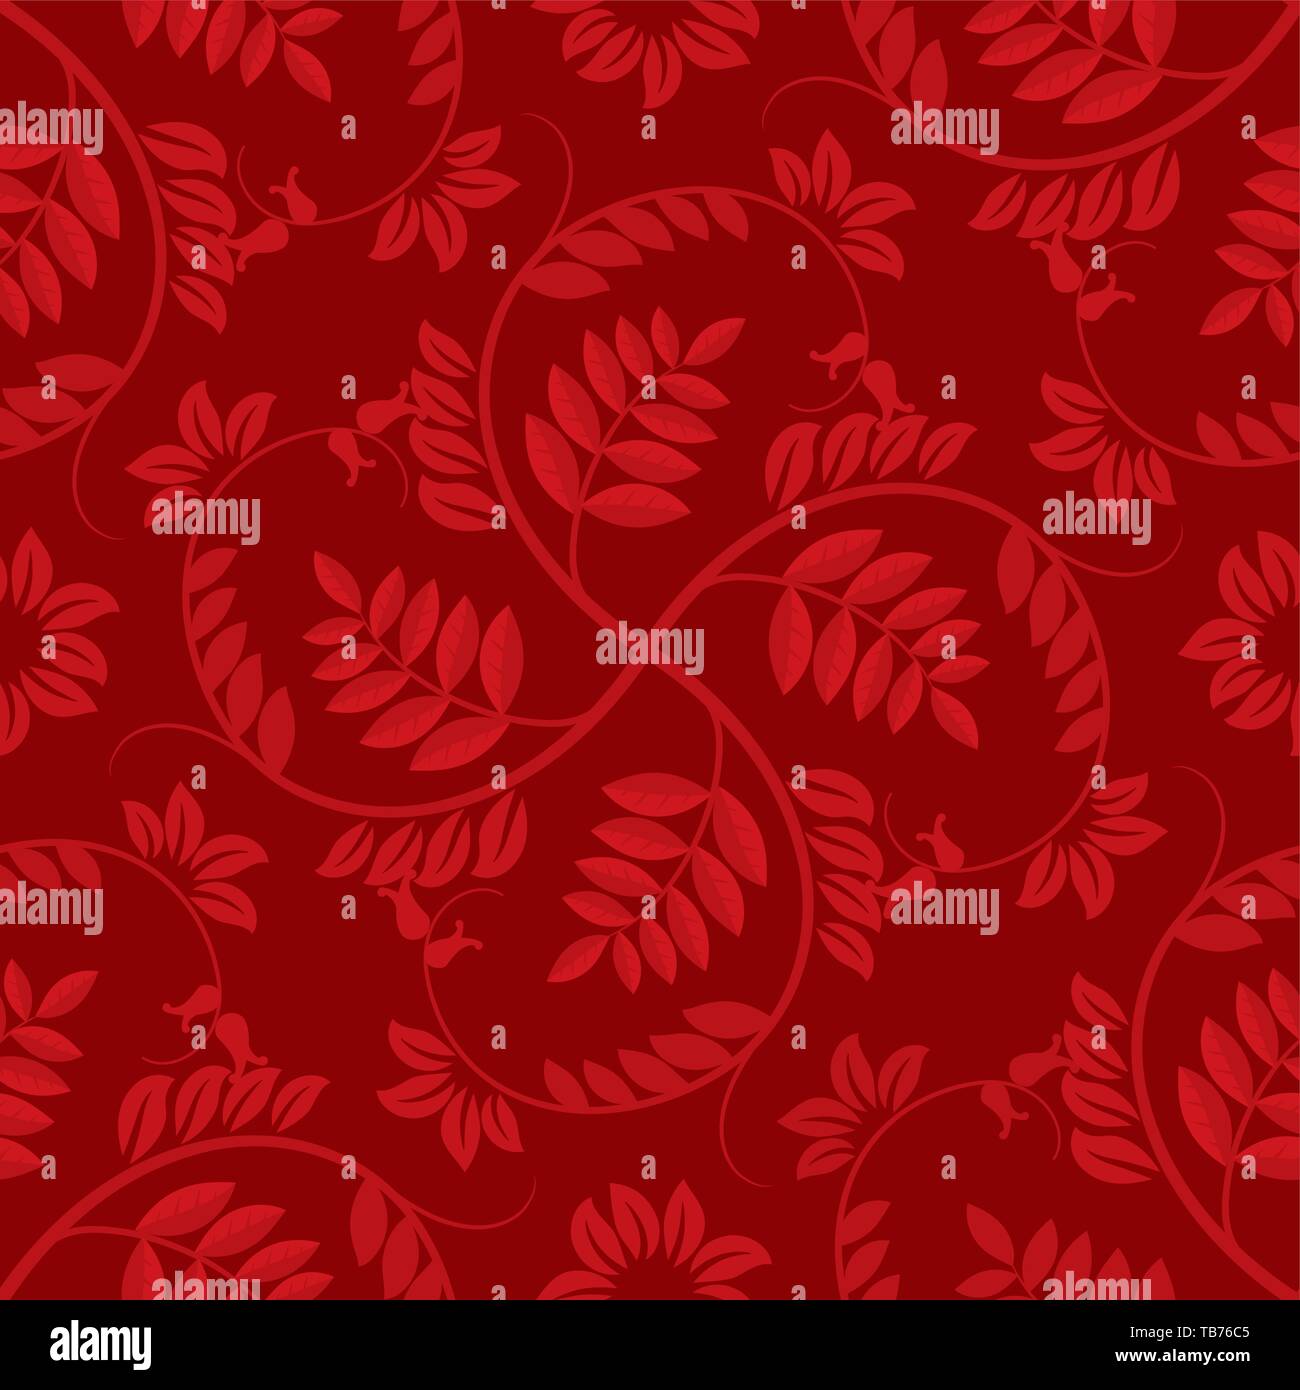 Illustrazione Vettoriale. Seamless sfondo floran nei toni del rosso con il ramo pattern. Illustrazione Vettoriale